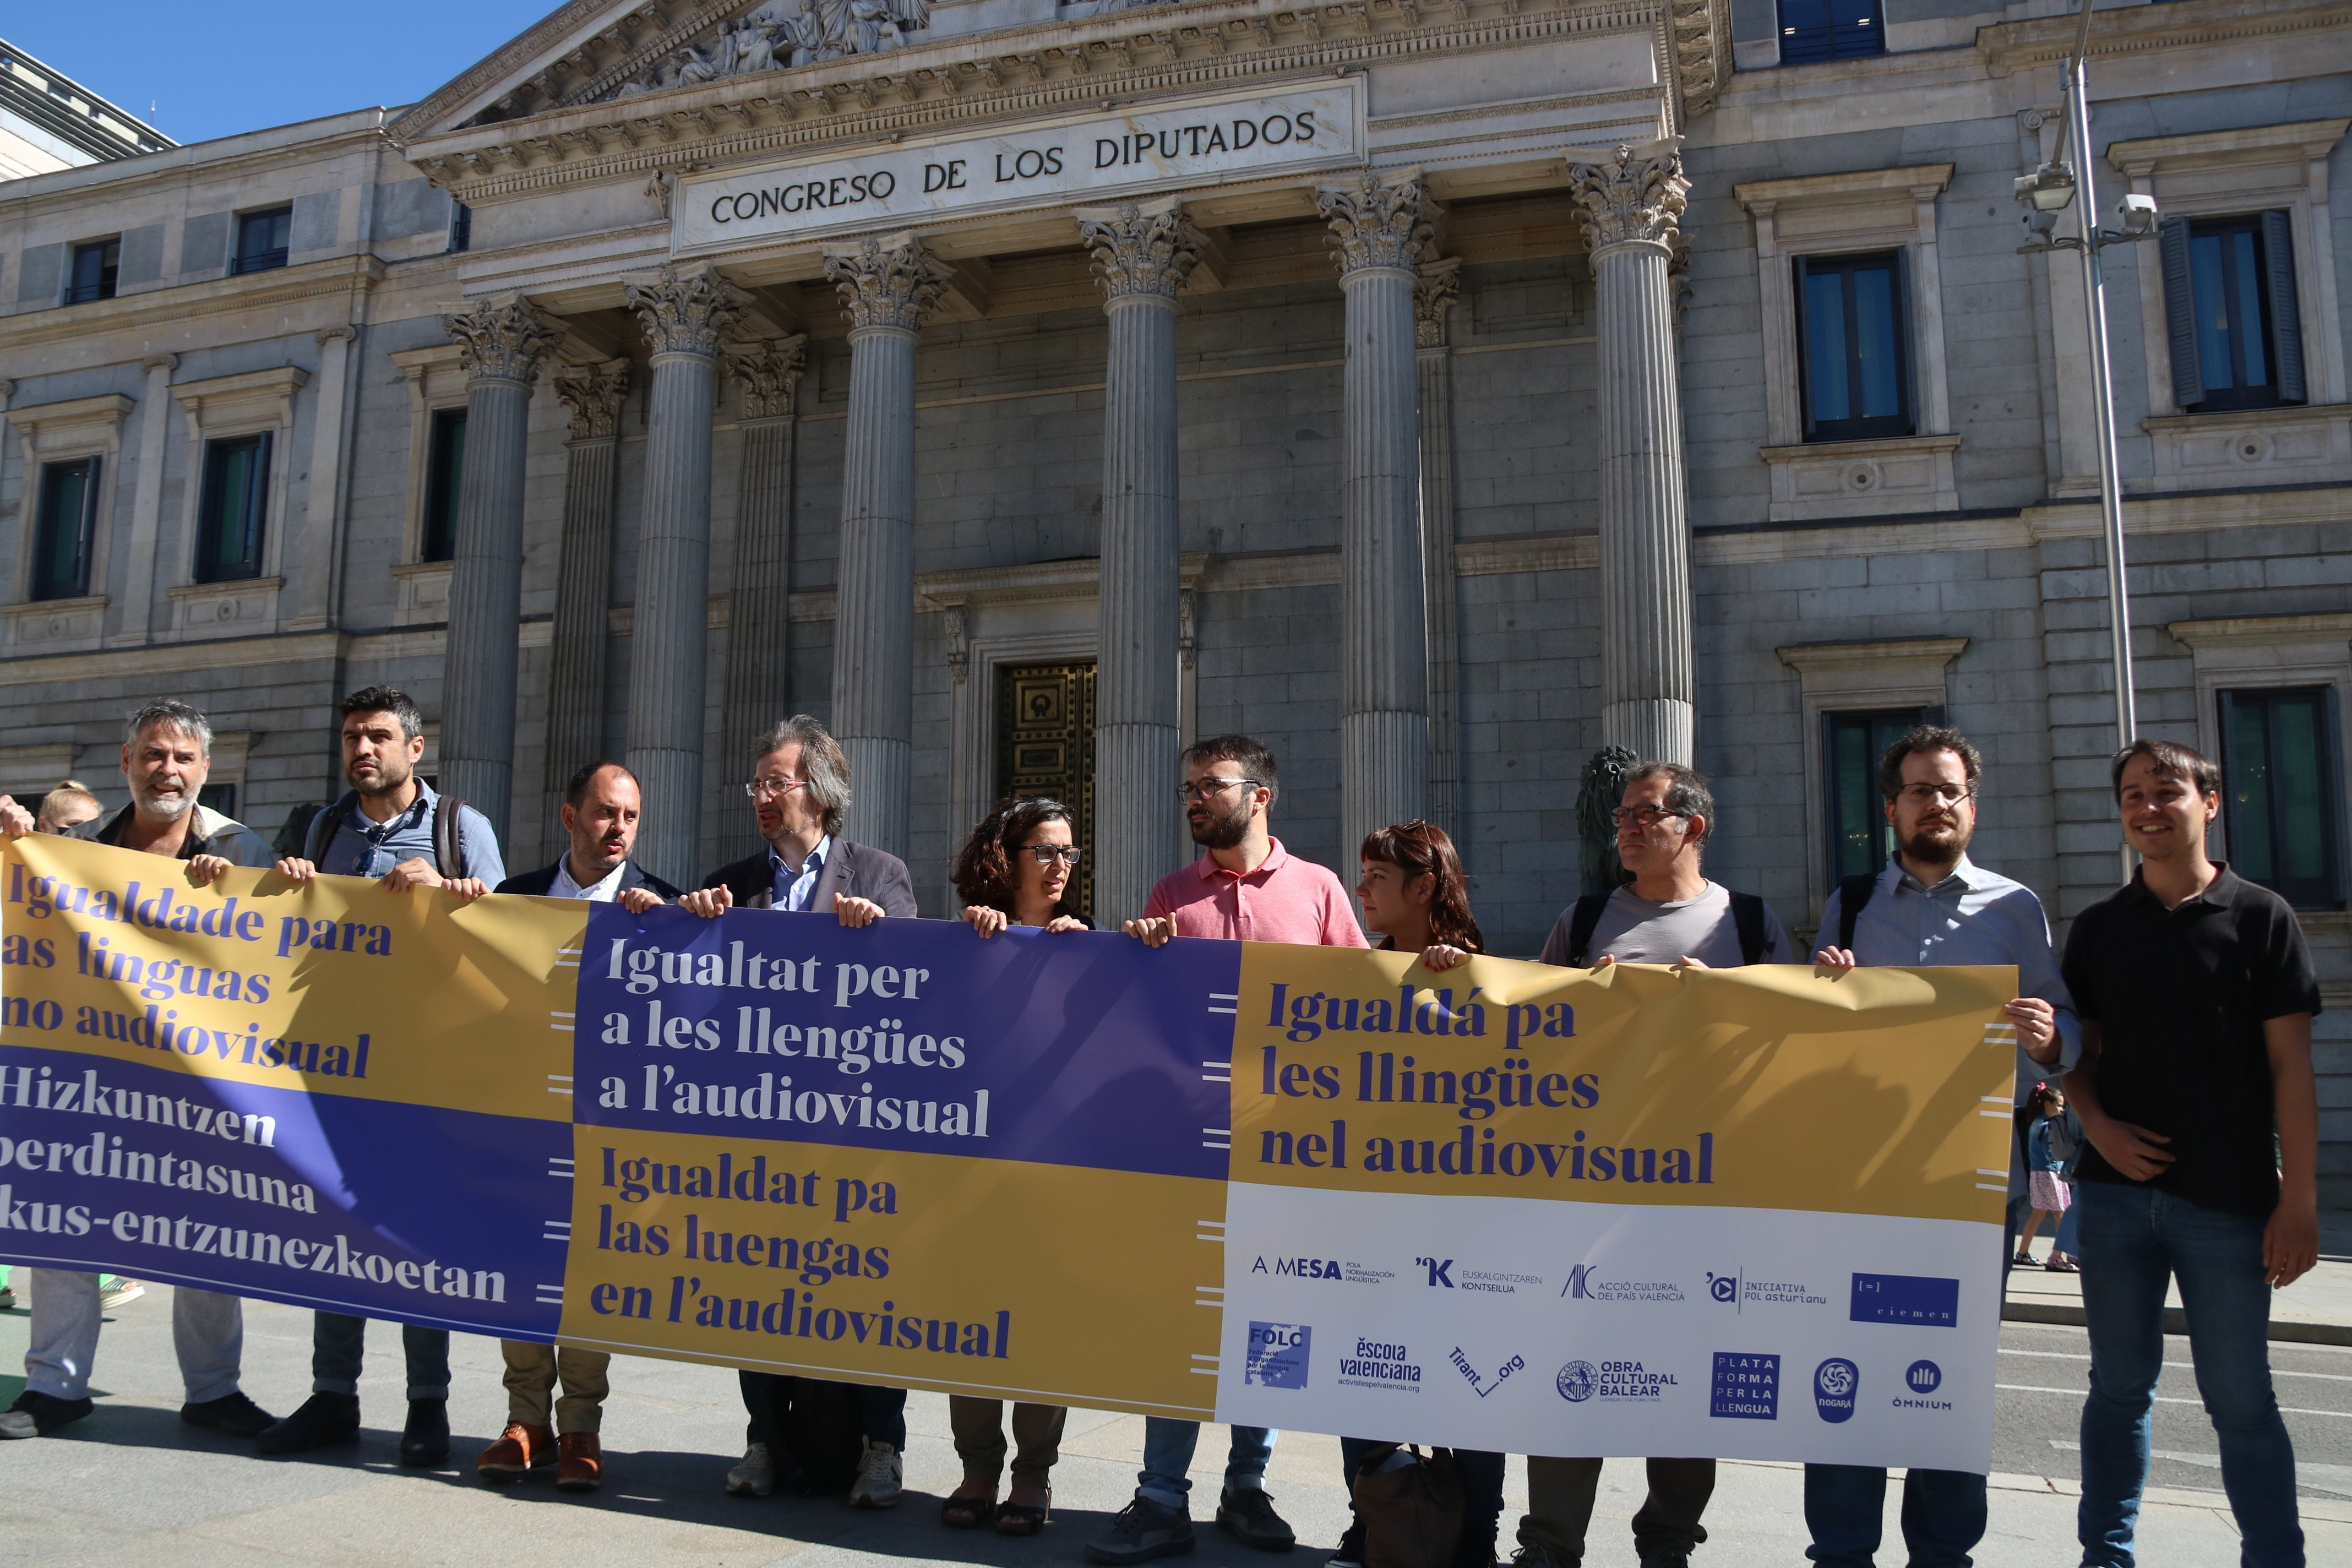 Protesta en el Congreso de entidades en defensa del catalán, euskera o gallego por la ley audiovisual